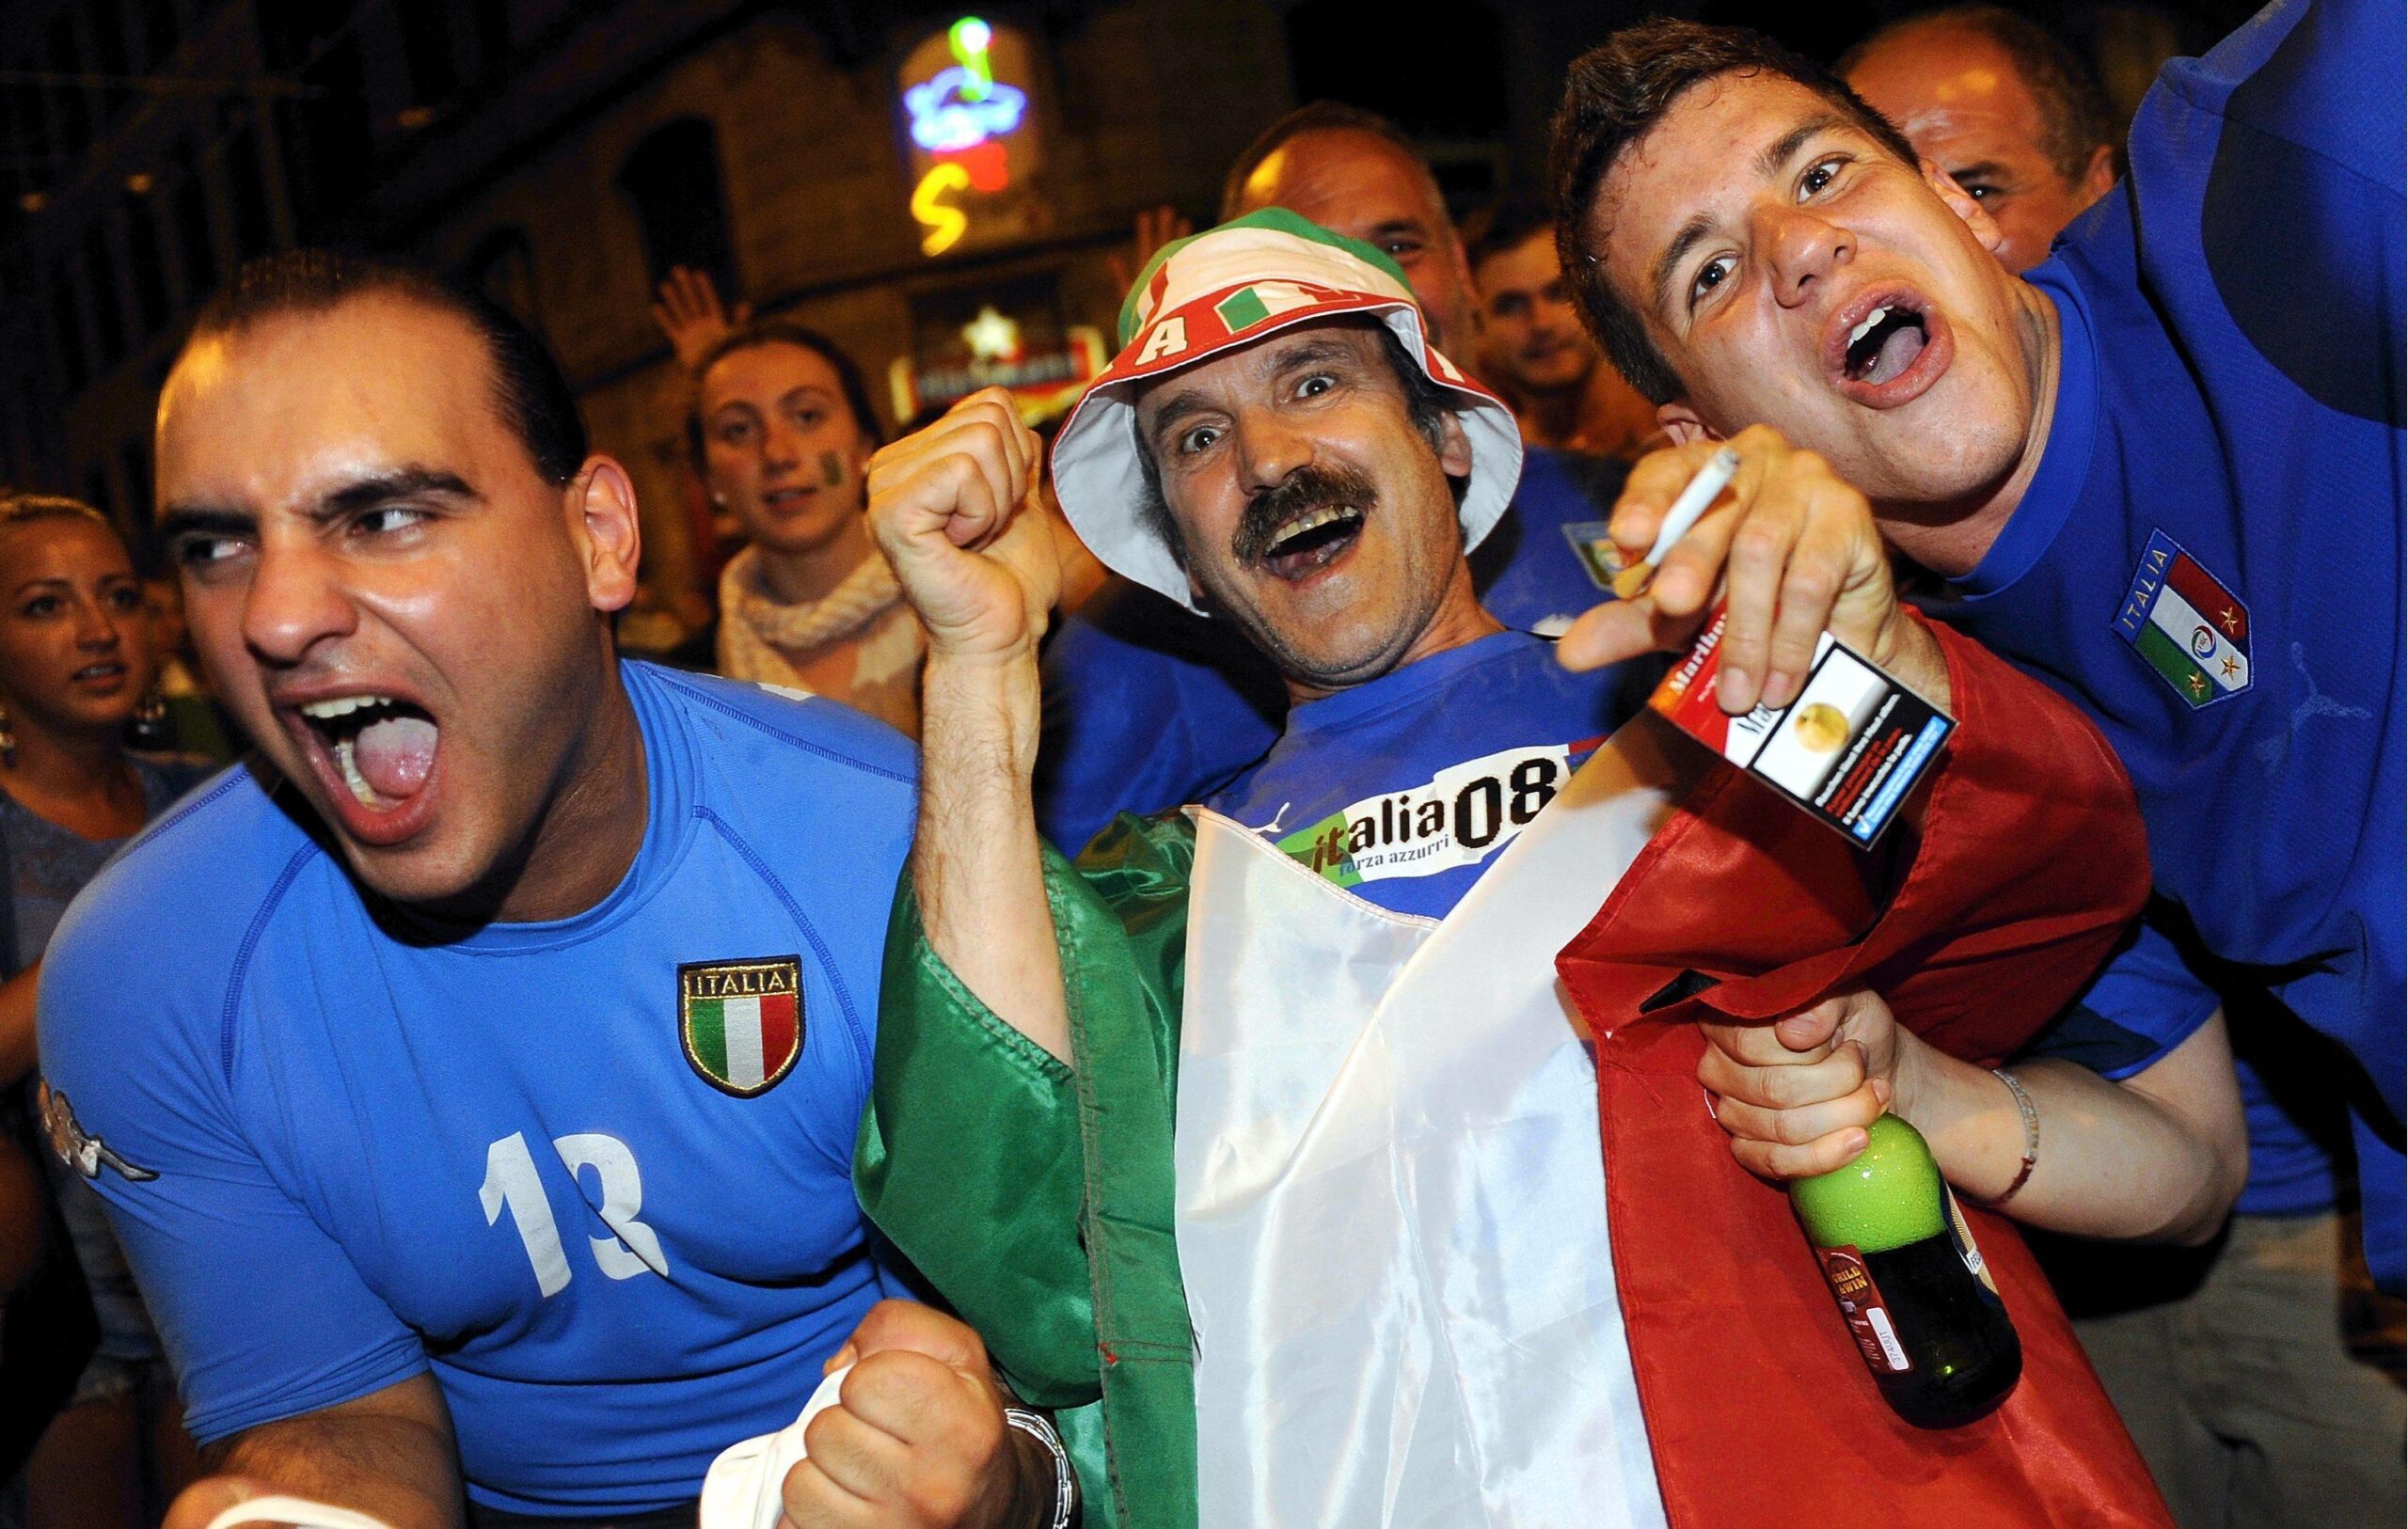 Italian fans in Switzerland03